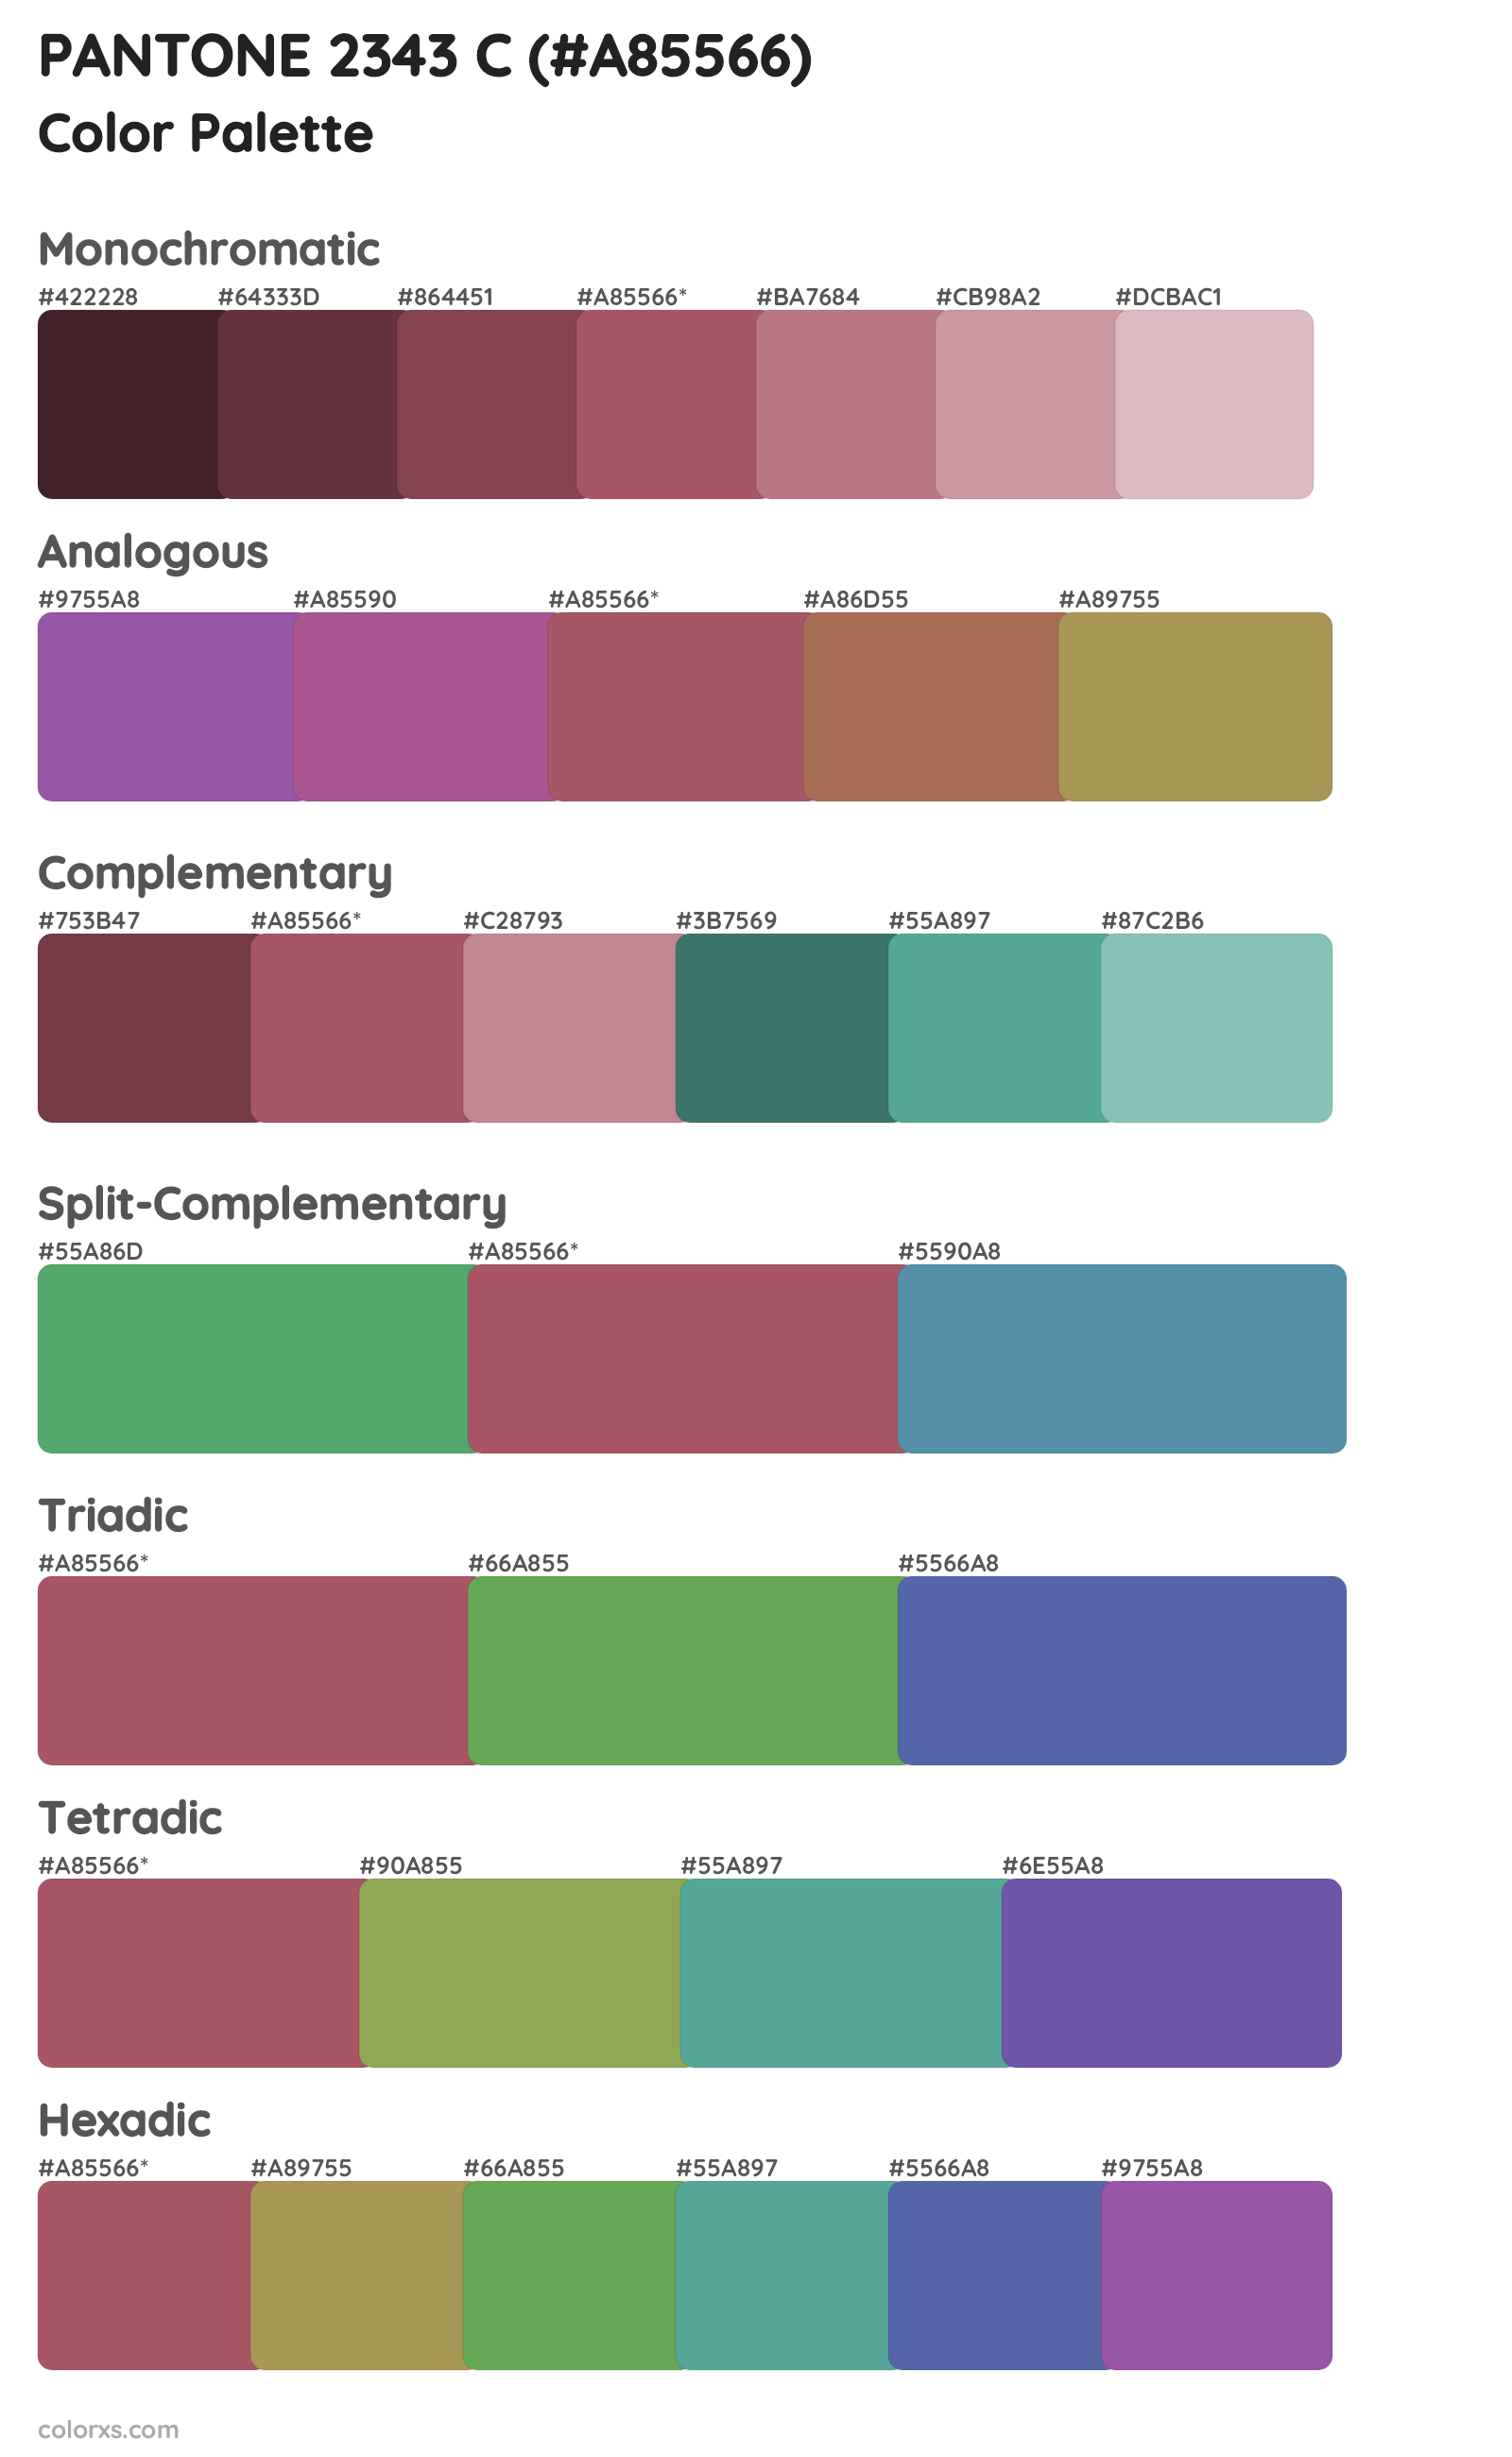 PANTONE 2343 C Color Scheme Palettes